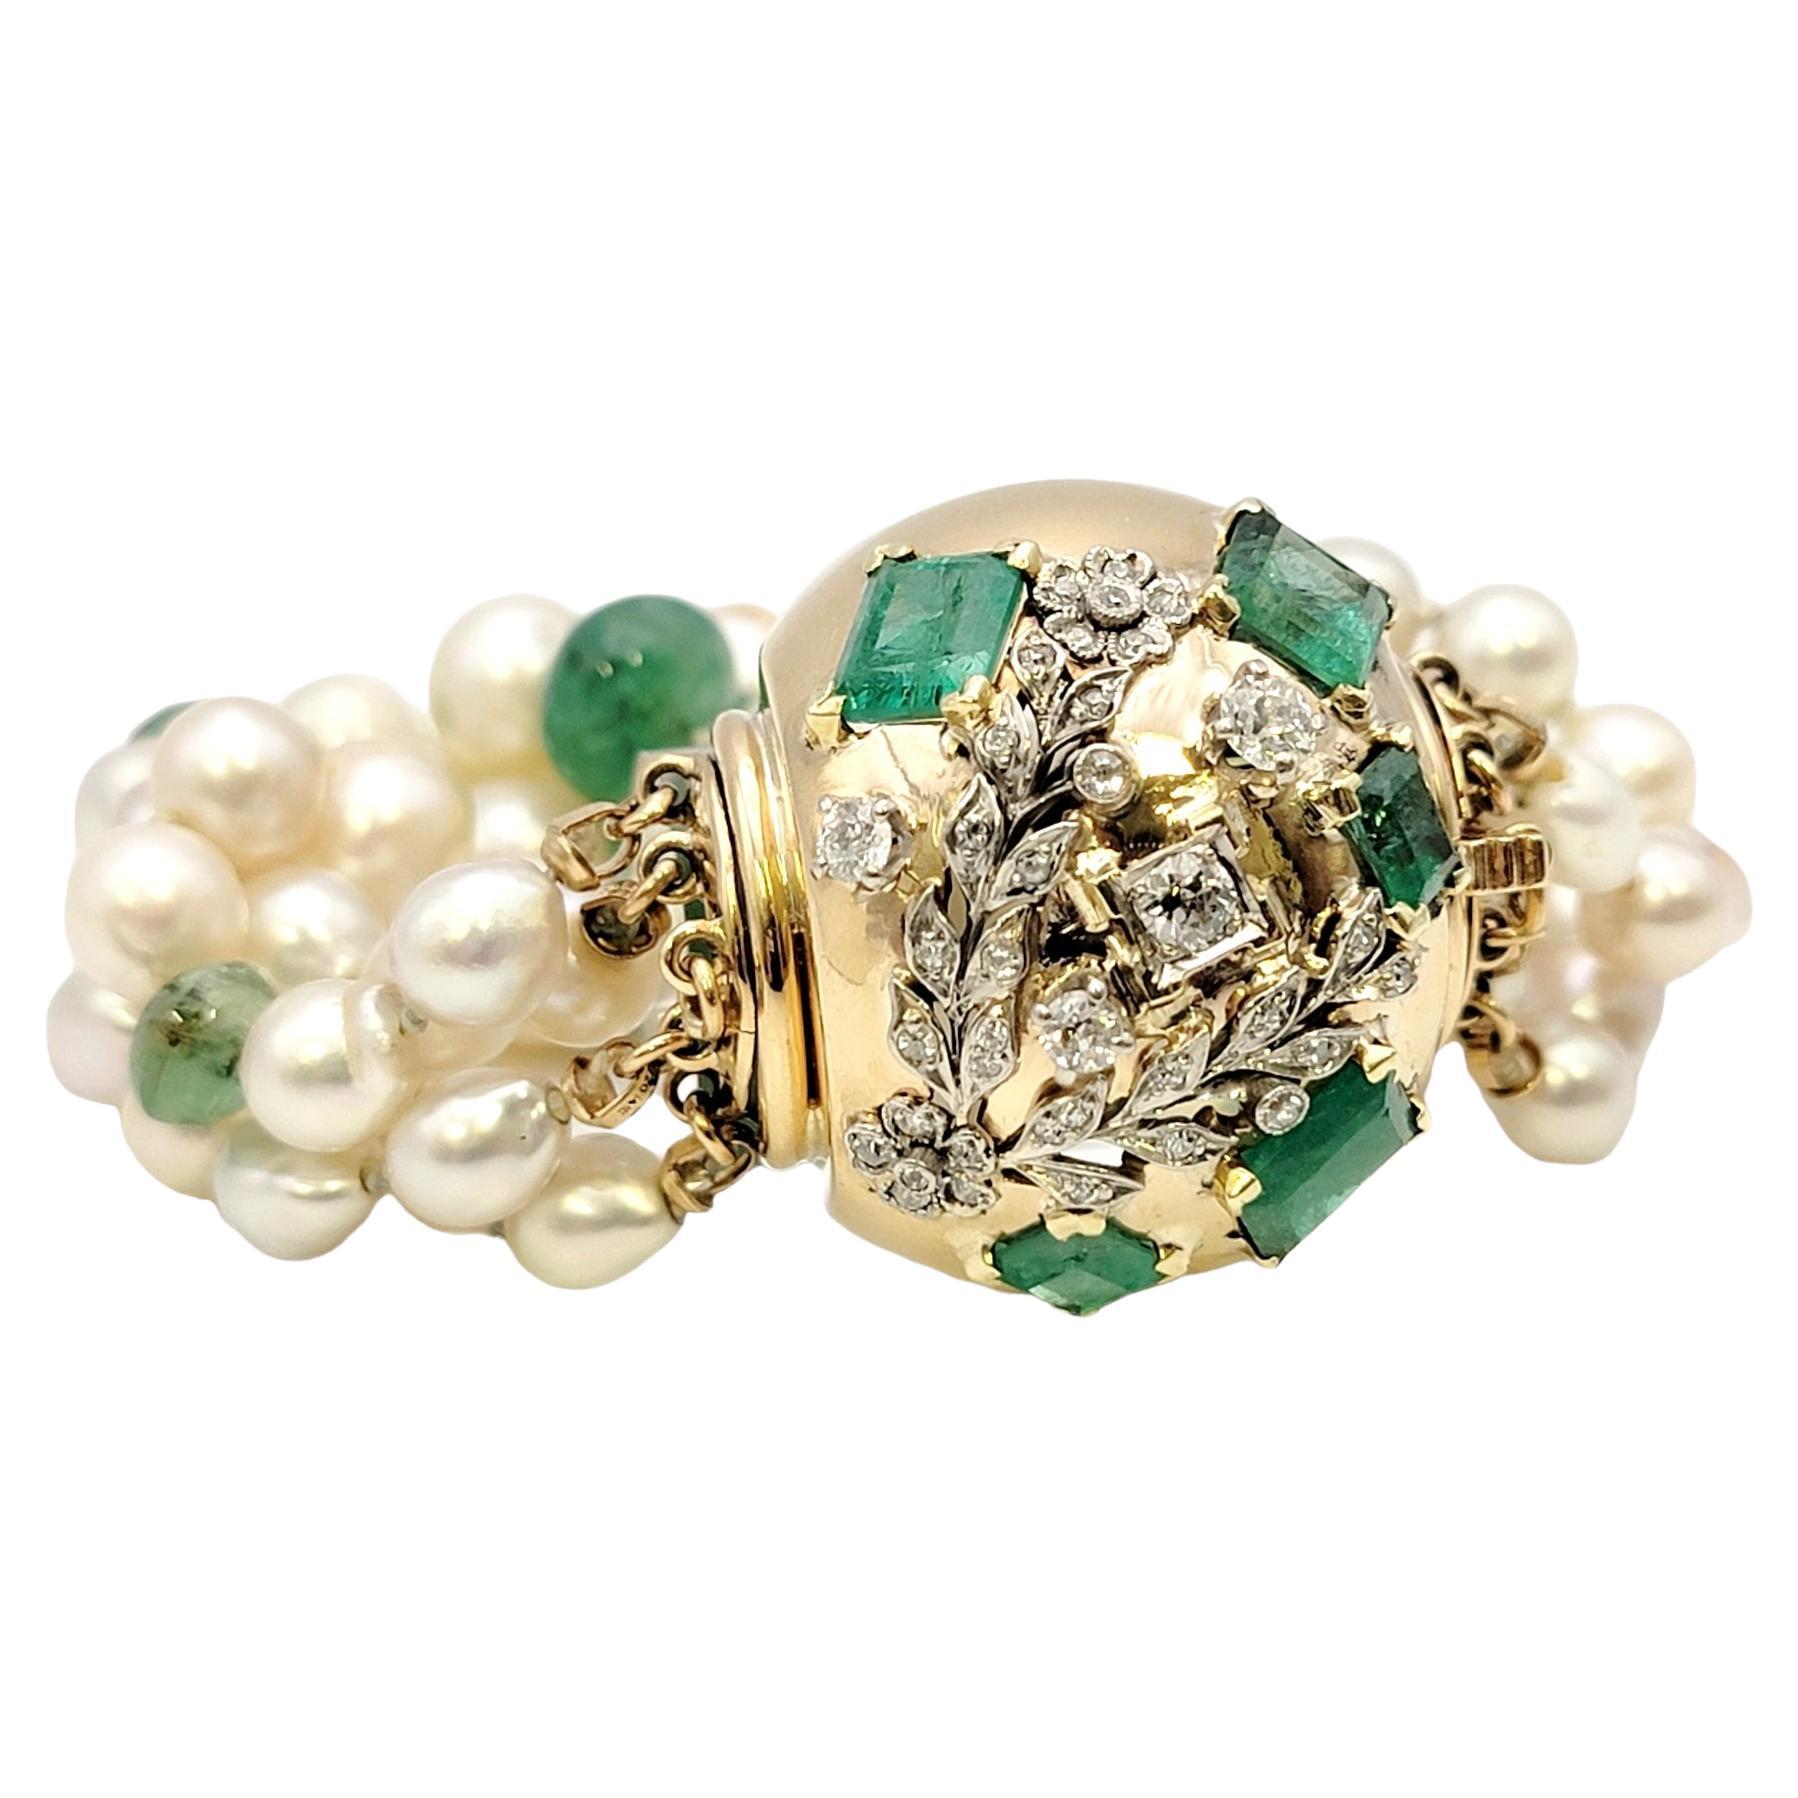 Bracelet vintage absolument époustouflant du célèbre créateur de bijoux, Seaman Schepps. Cette superbe pièce de tapis rouge du 